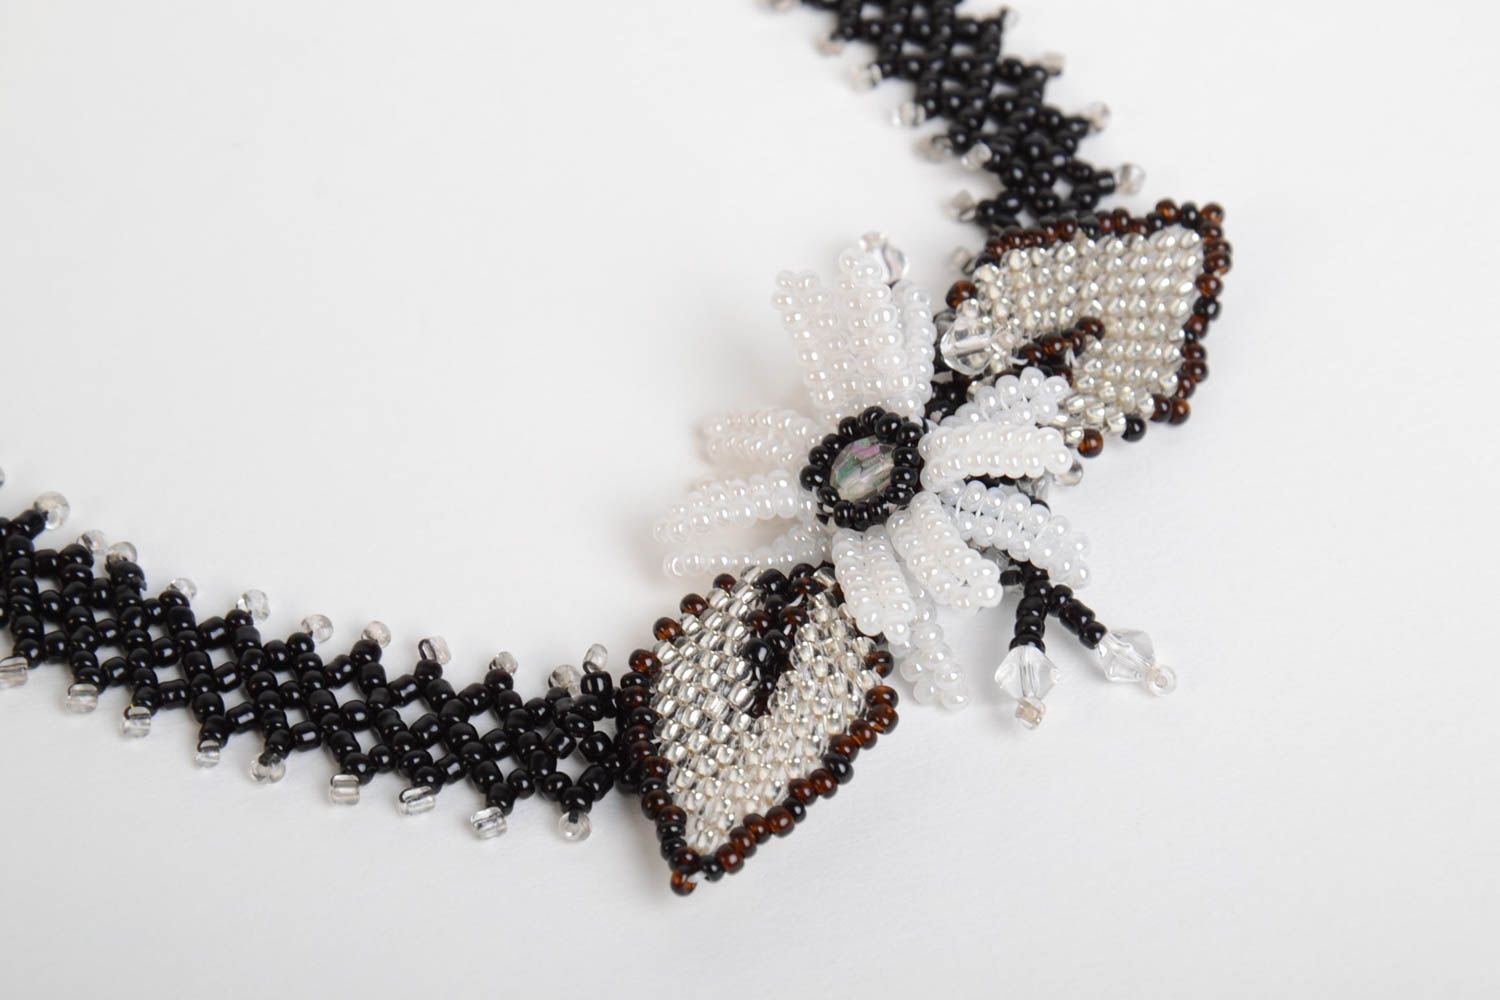 Ожерелье из бисера ручной работы красивое стильное ажурное женское с бантиком фото 3